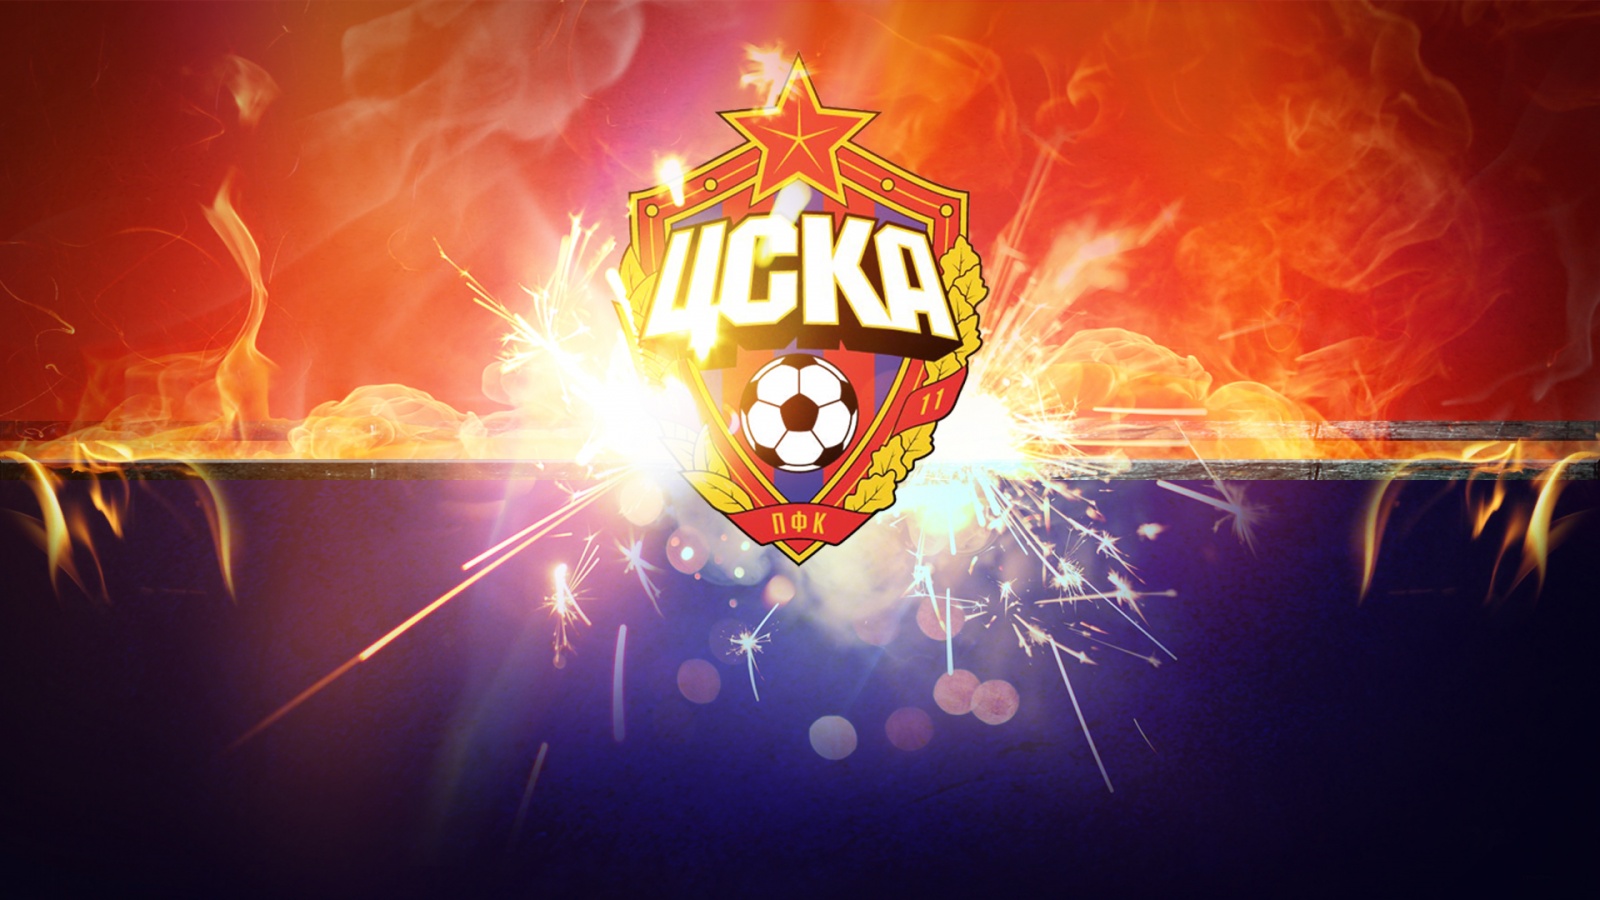 CSKA Football Club Moscow